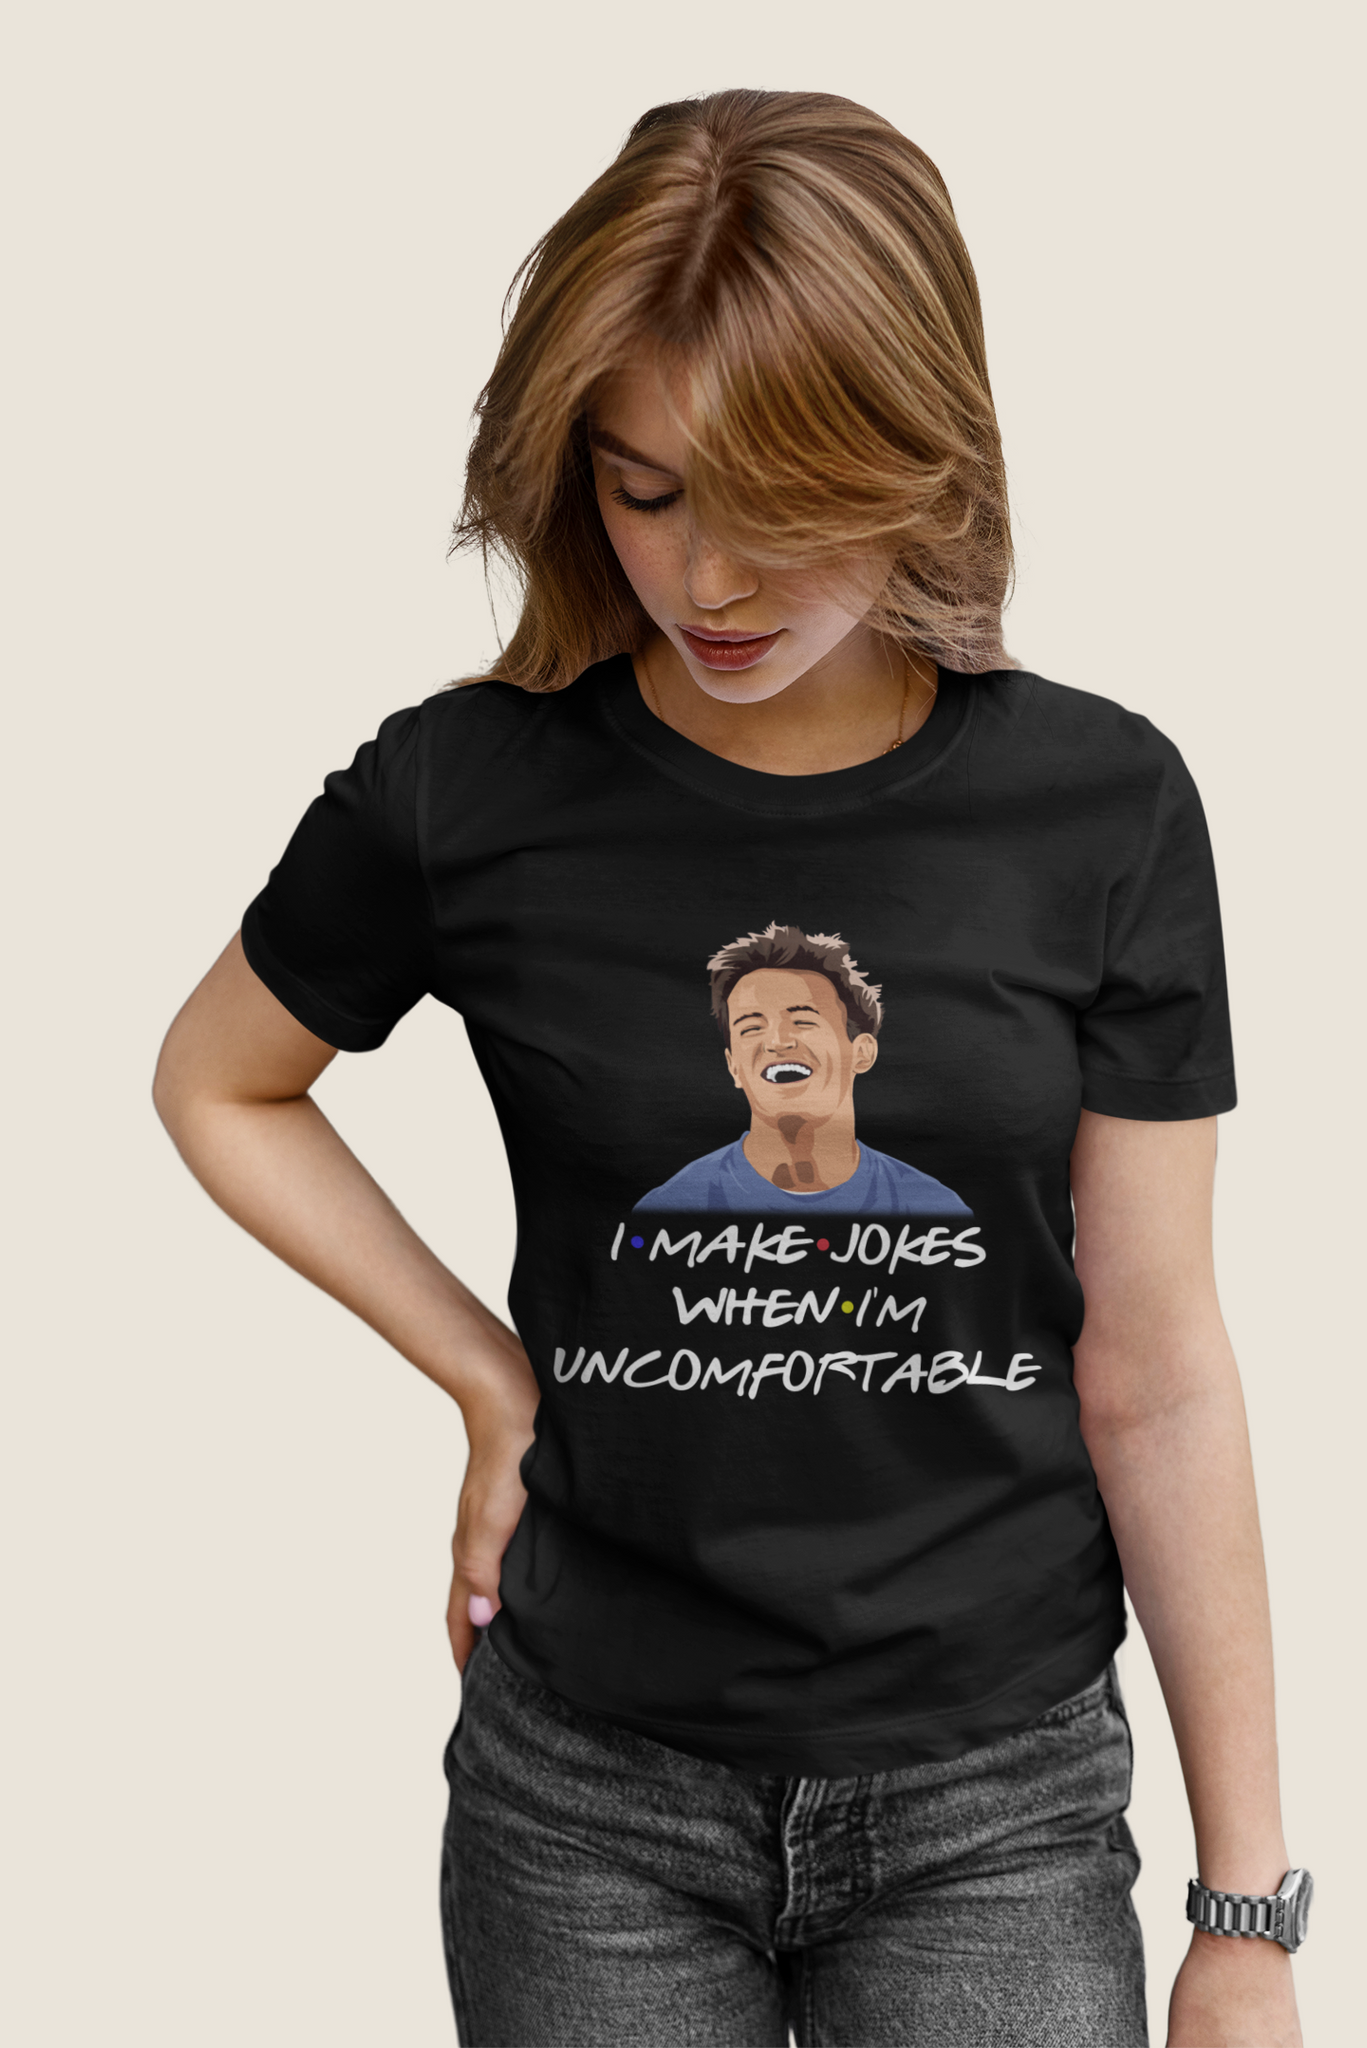 Friends TV Show T Shirt, Friends Shirt, Chandler T Shirt, I Make Jokes When Im Uncomfortable Tshirt